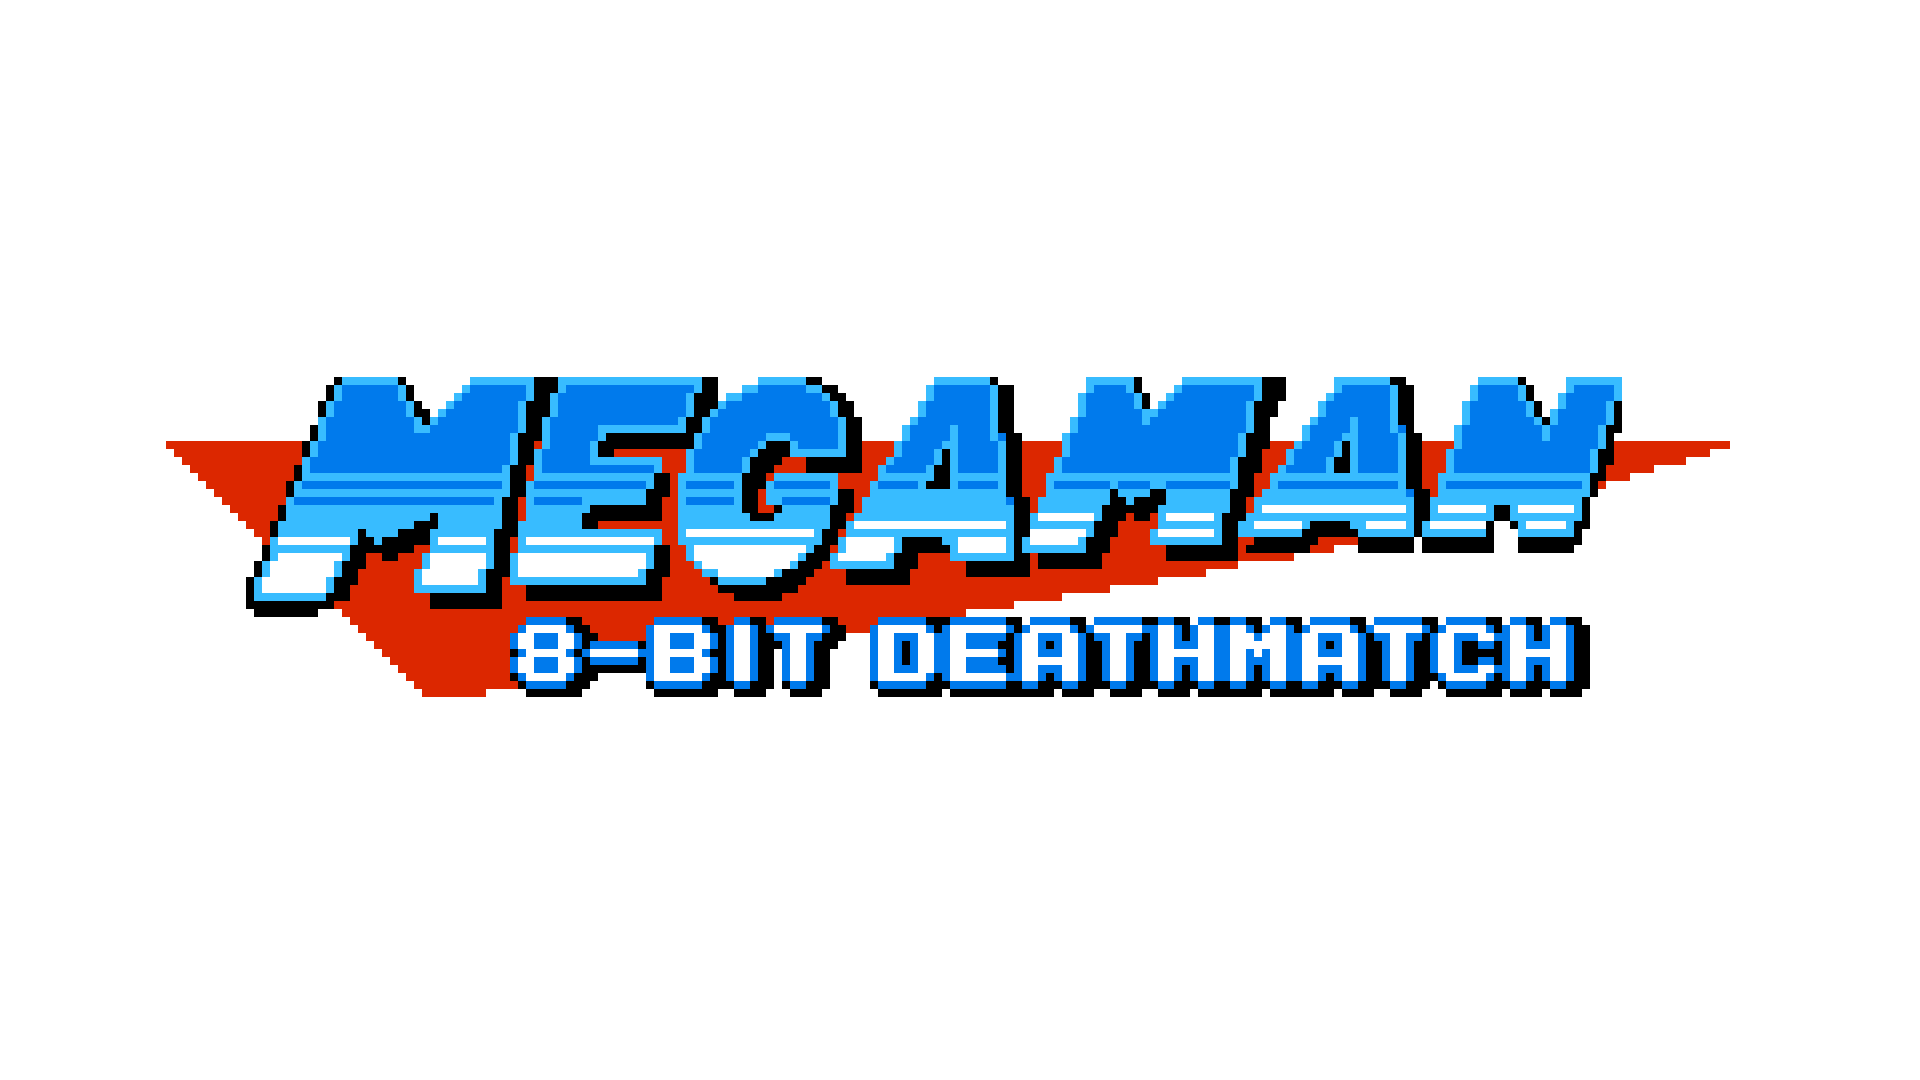 Mega Man 8-Bit Deathmatch Logo